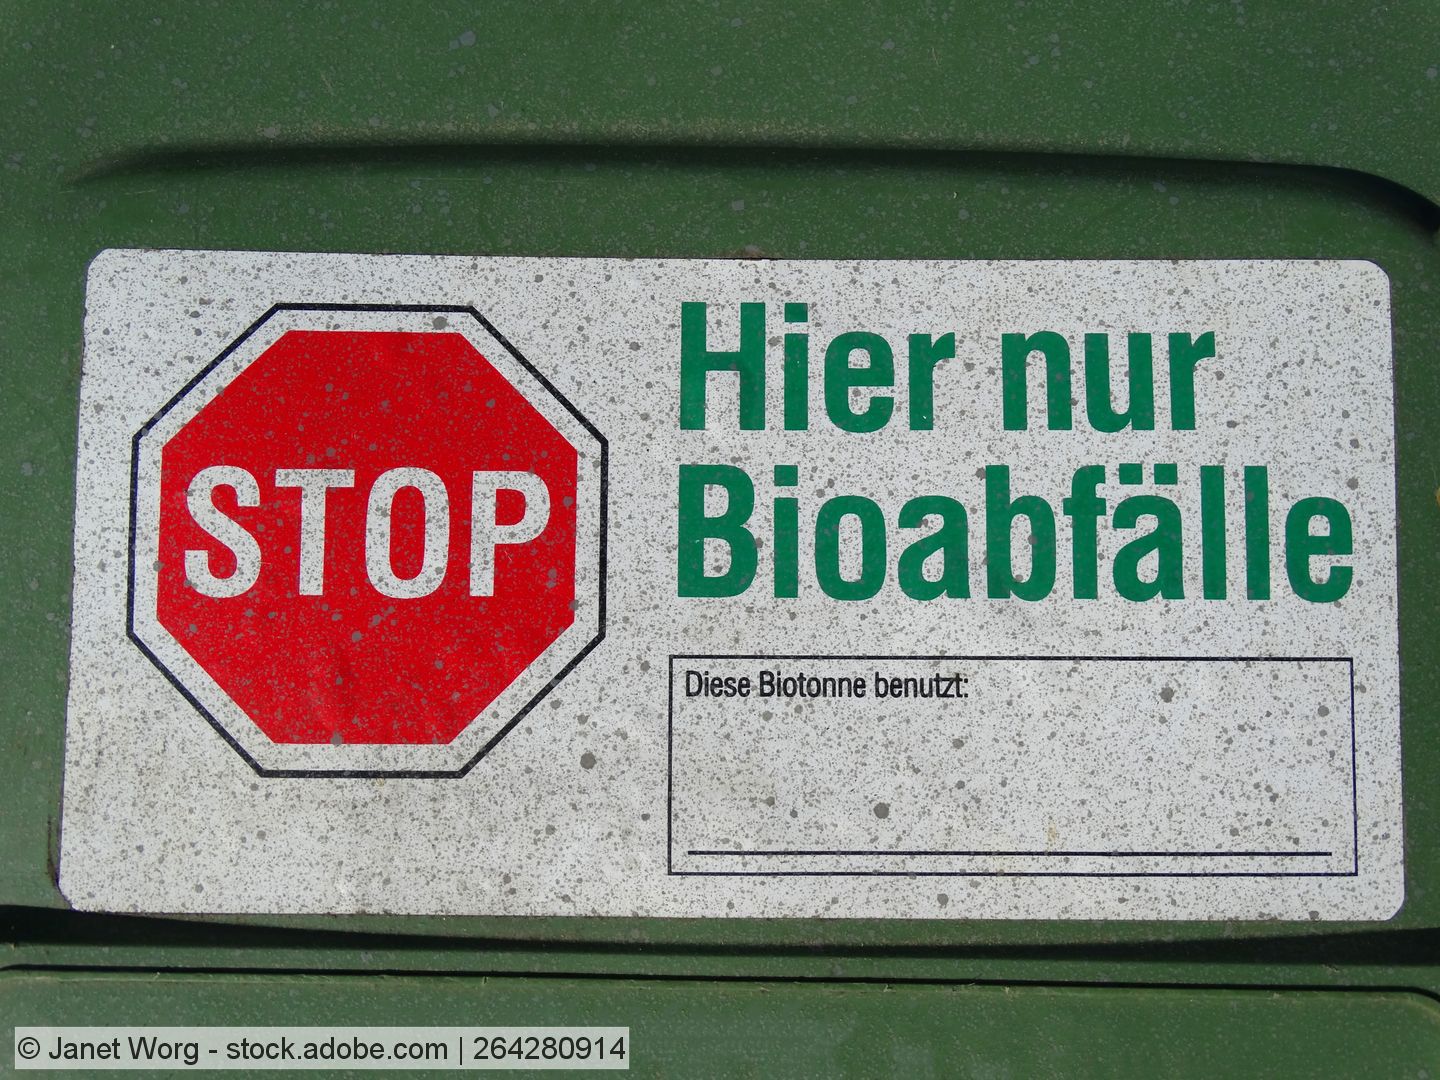 Biotonnen-Kontrolle in Mainz zeigt erste Erfolge